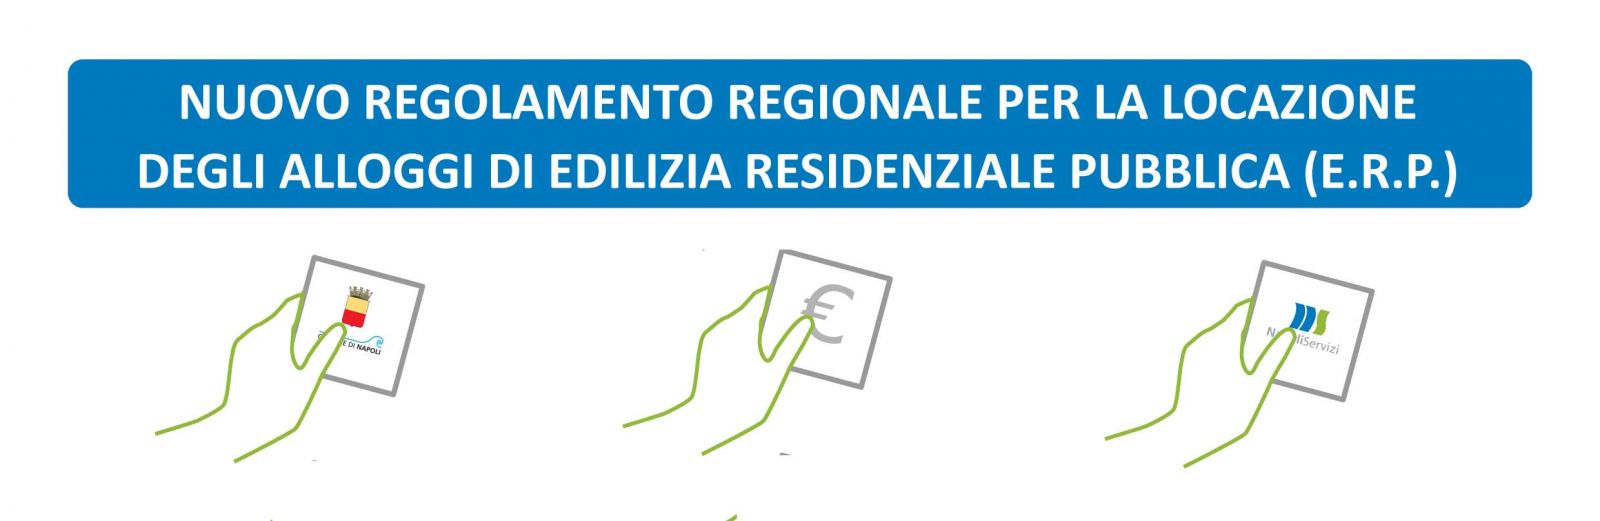 Nuovo regolamento regionale per la locazione degli alloggi di edilizia residenziale pubblica (E.R.P.)